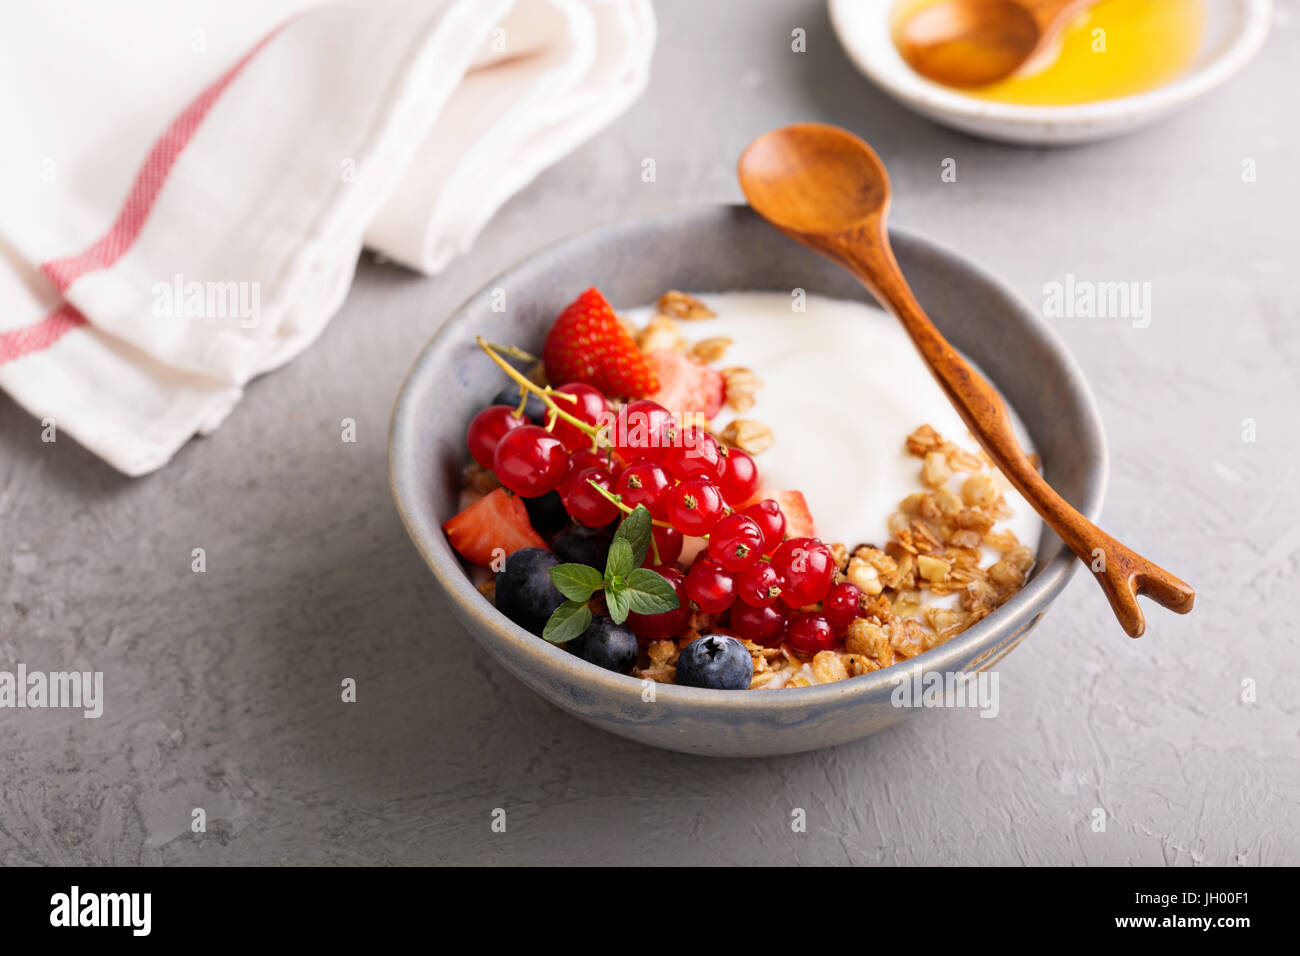 Yogurt bowl with granola and fresh berries Stock Photo